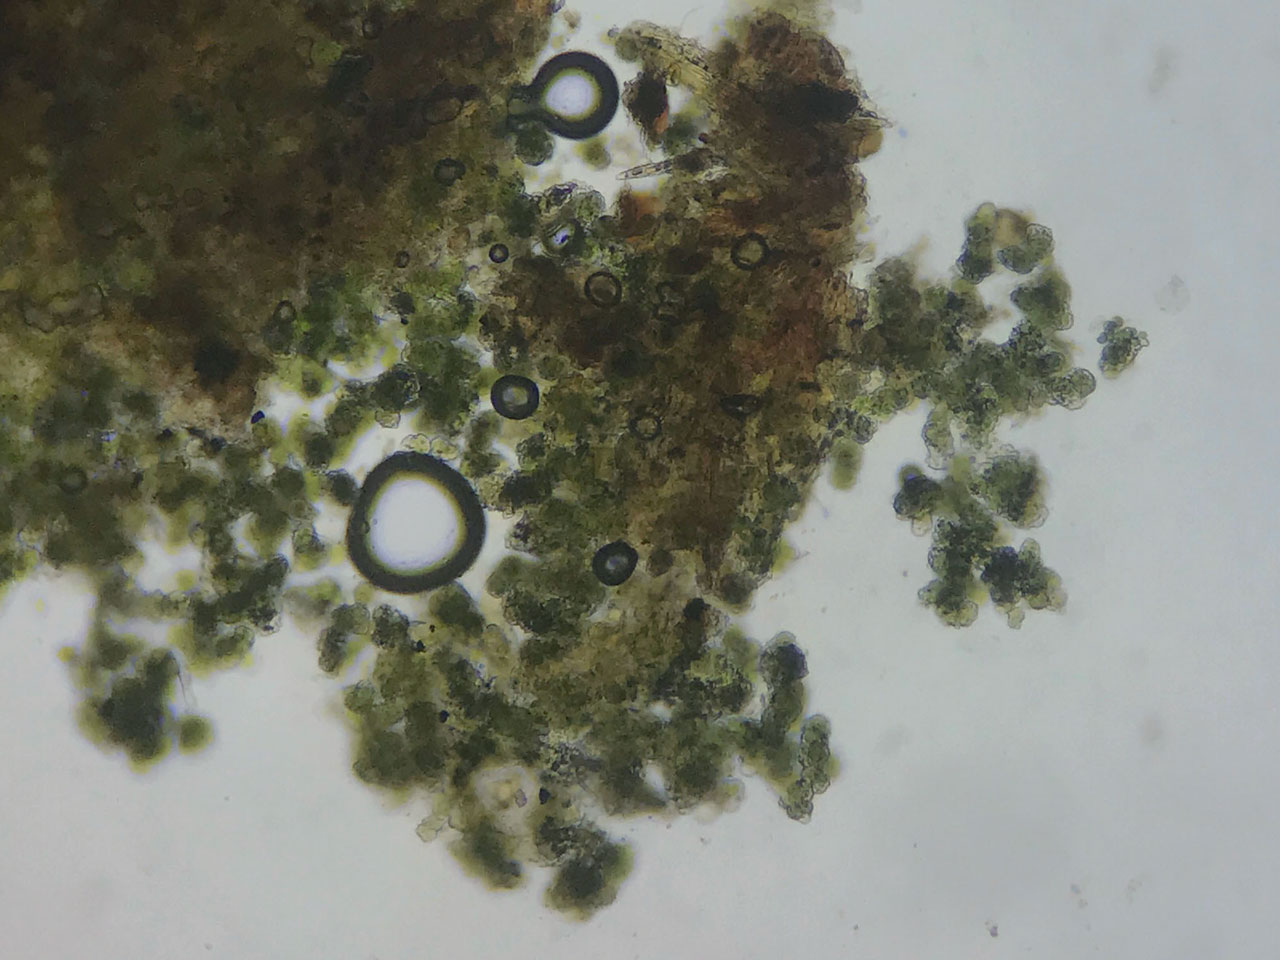 Bacidina celtica (Bacidina squamellosa), isidia, Sallow, Sticknage Wood, New Forest